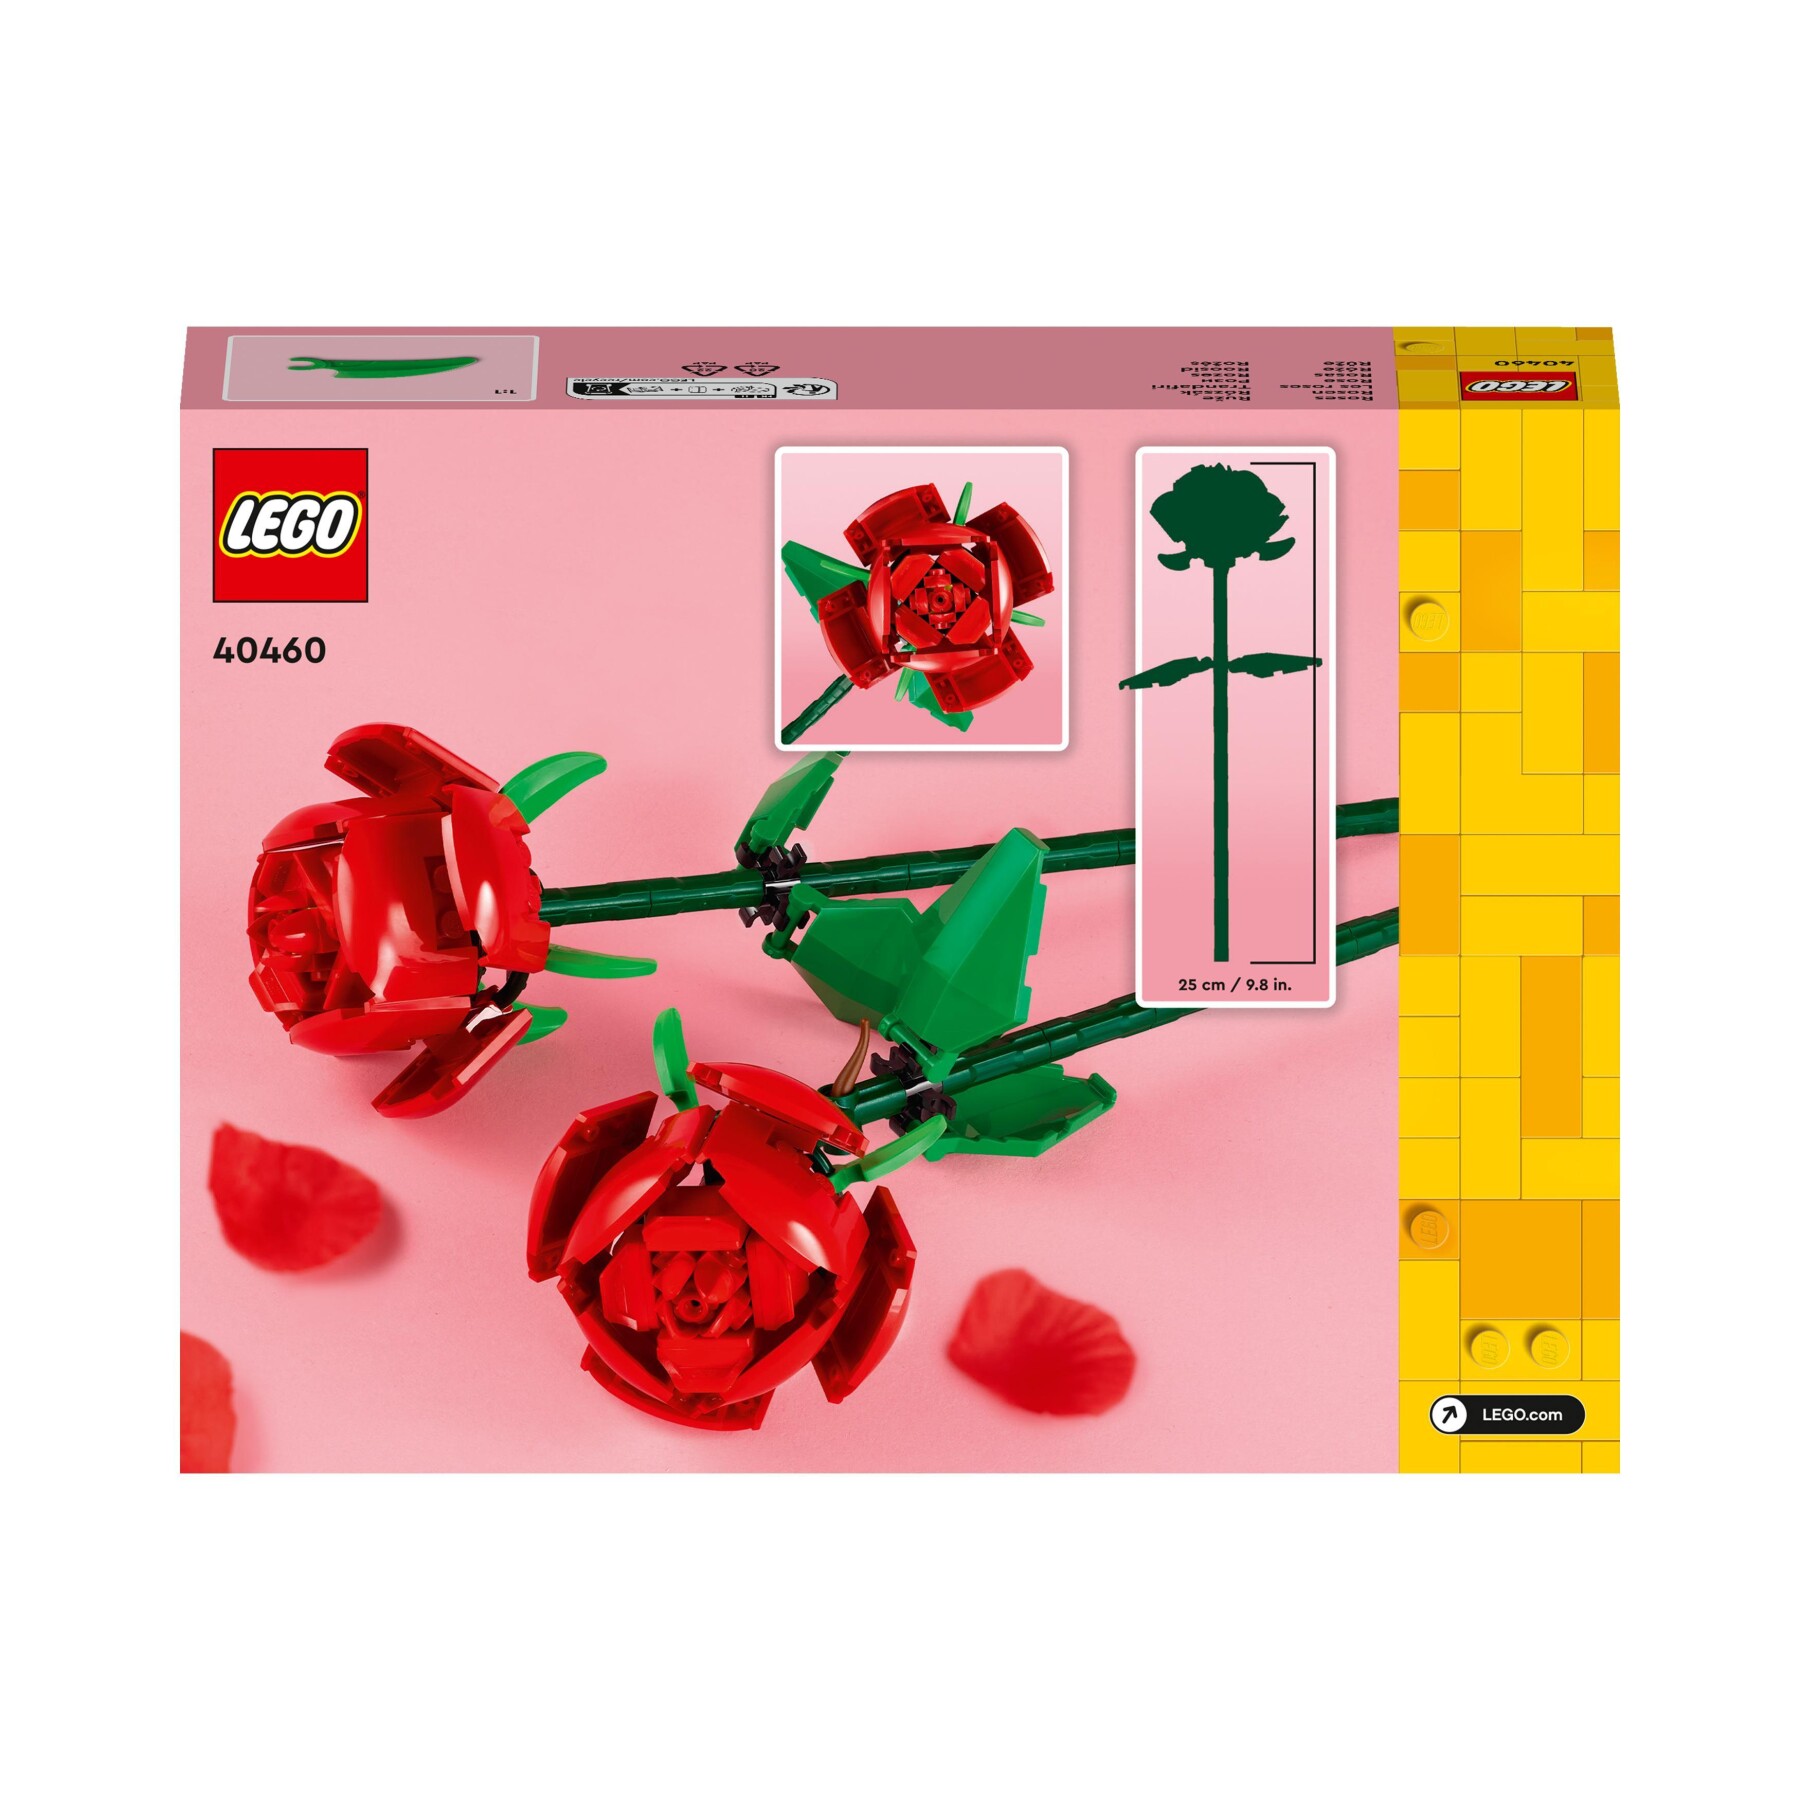 LEGO rose e tulipani, due nuovi set della linea Botanical Collection su LEGO  Shop